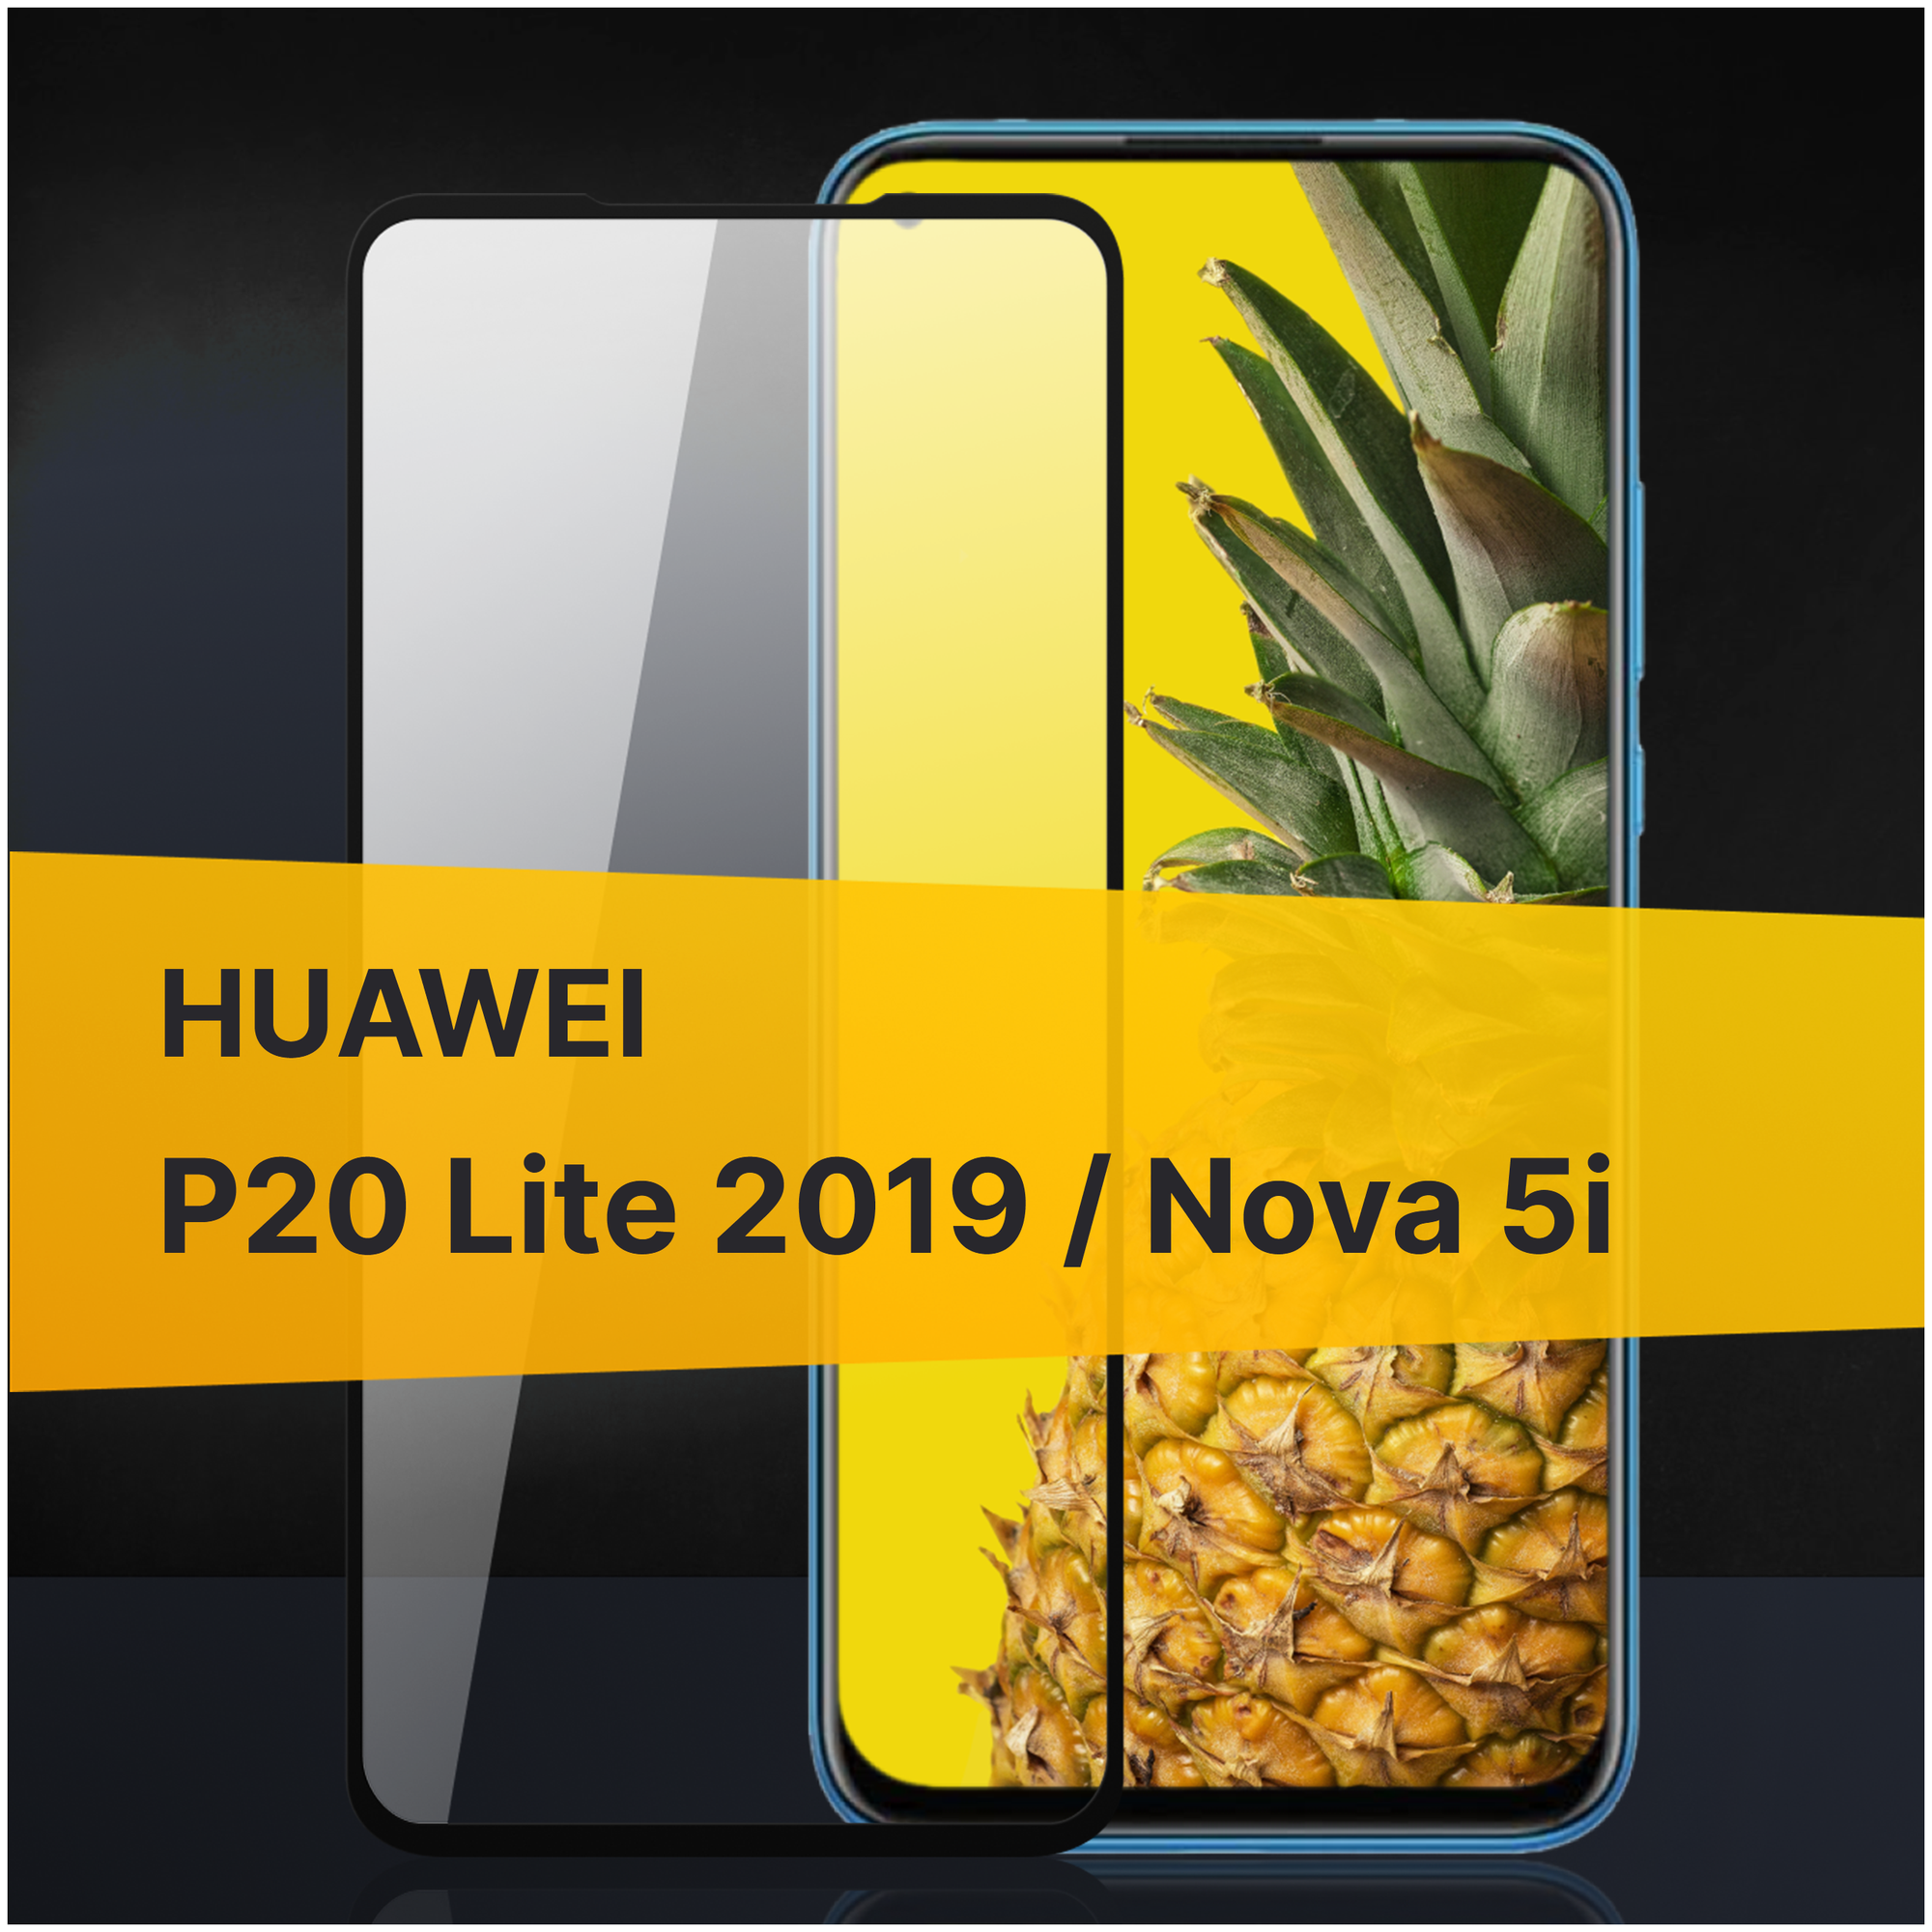 Противоударное защитное стекло для телефона Huawei Nova 5i и P20 lite 2019 / 3D стекло с олеофобным покрытием на Хуавей Нова 5 ай и П20 Лайт 2019